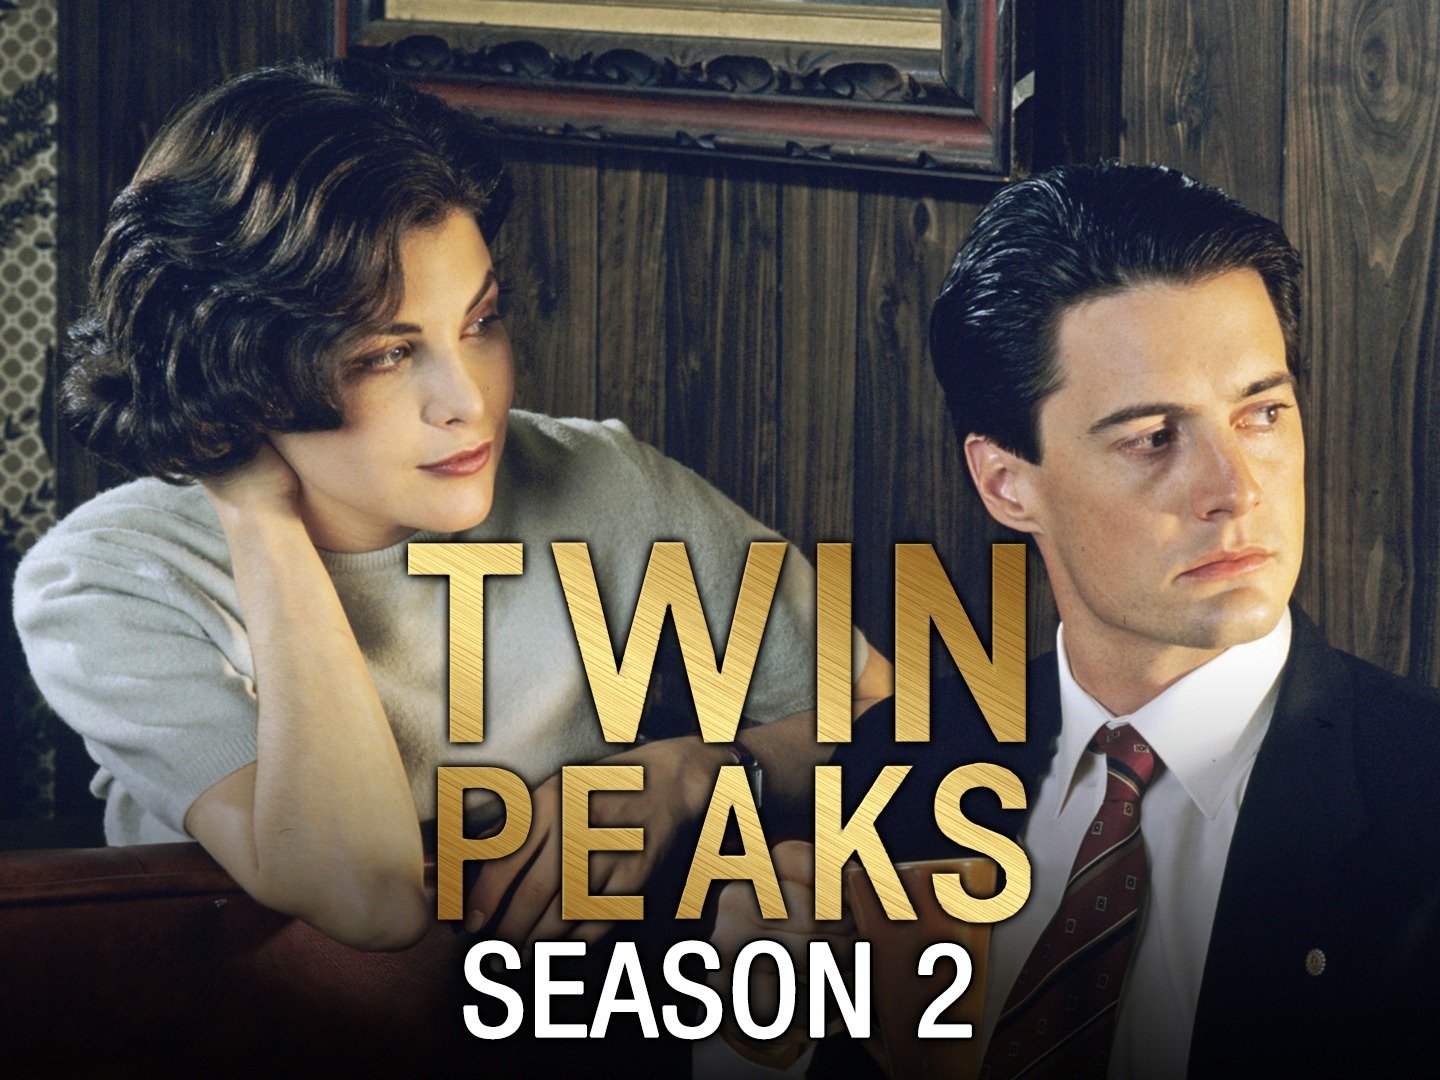 twin peaks season two episode 1 cast